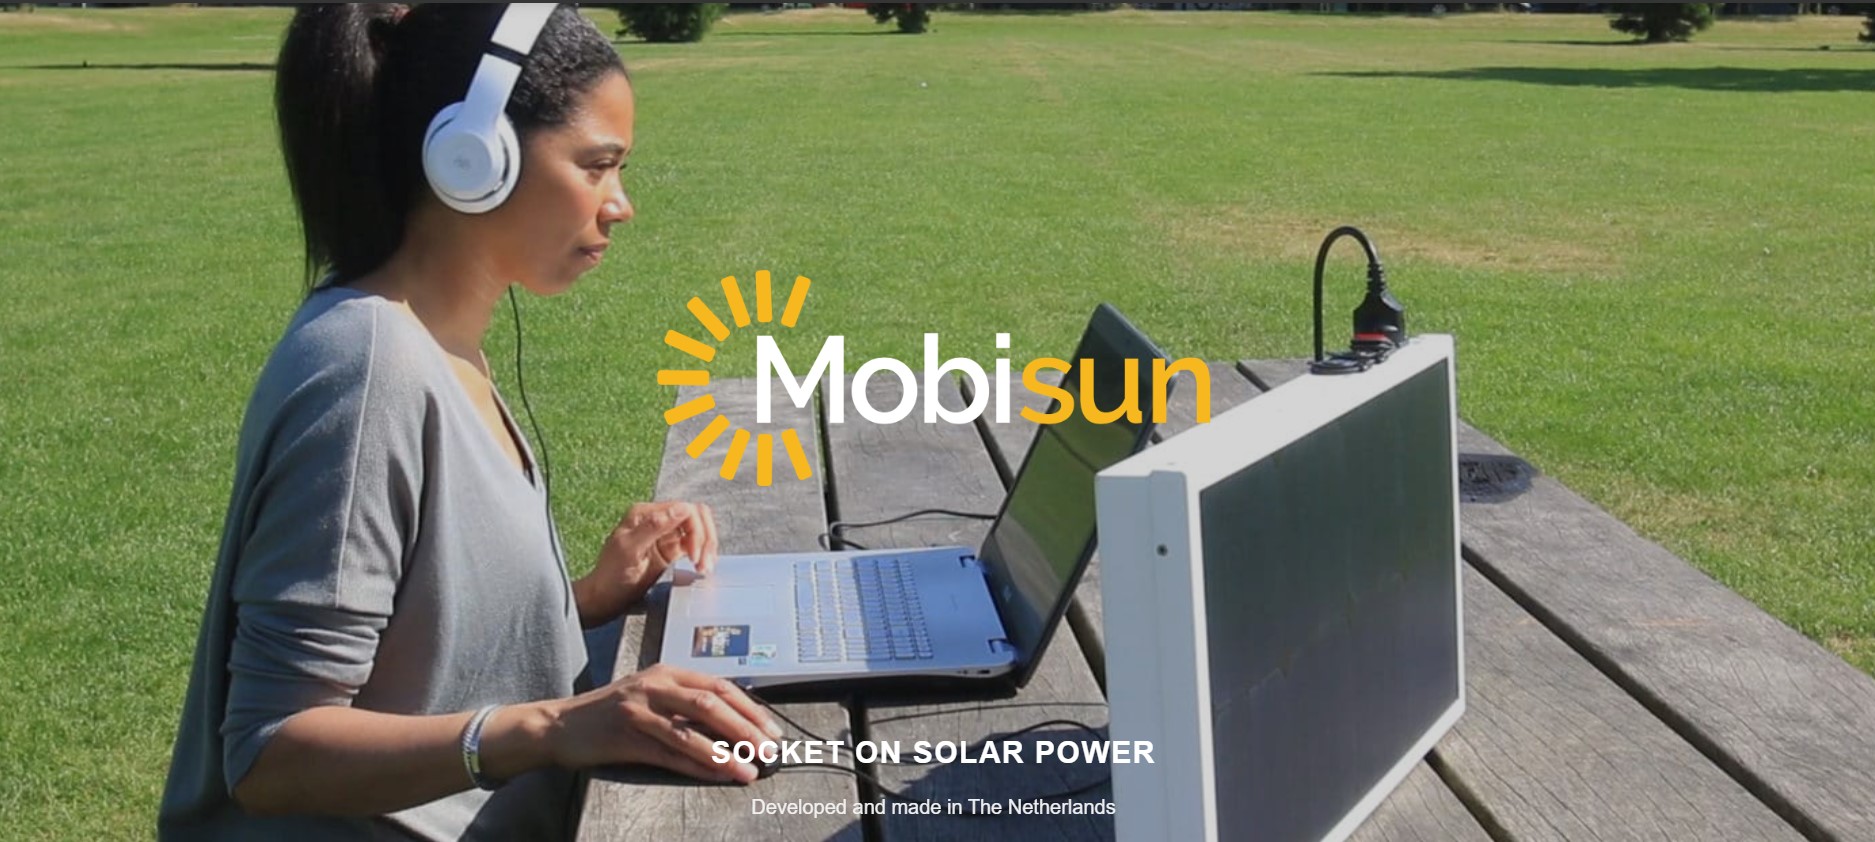 Mobisun Pro met aanvullende lichtgewicht draagbare uitgevouwen zonnepanelen